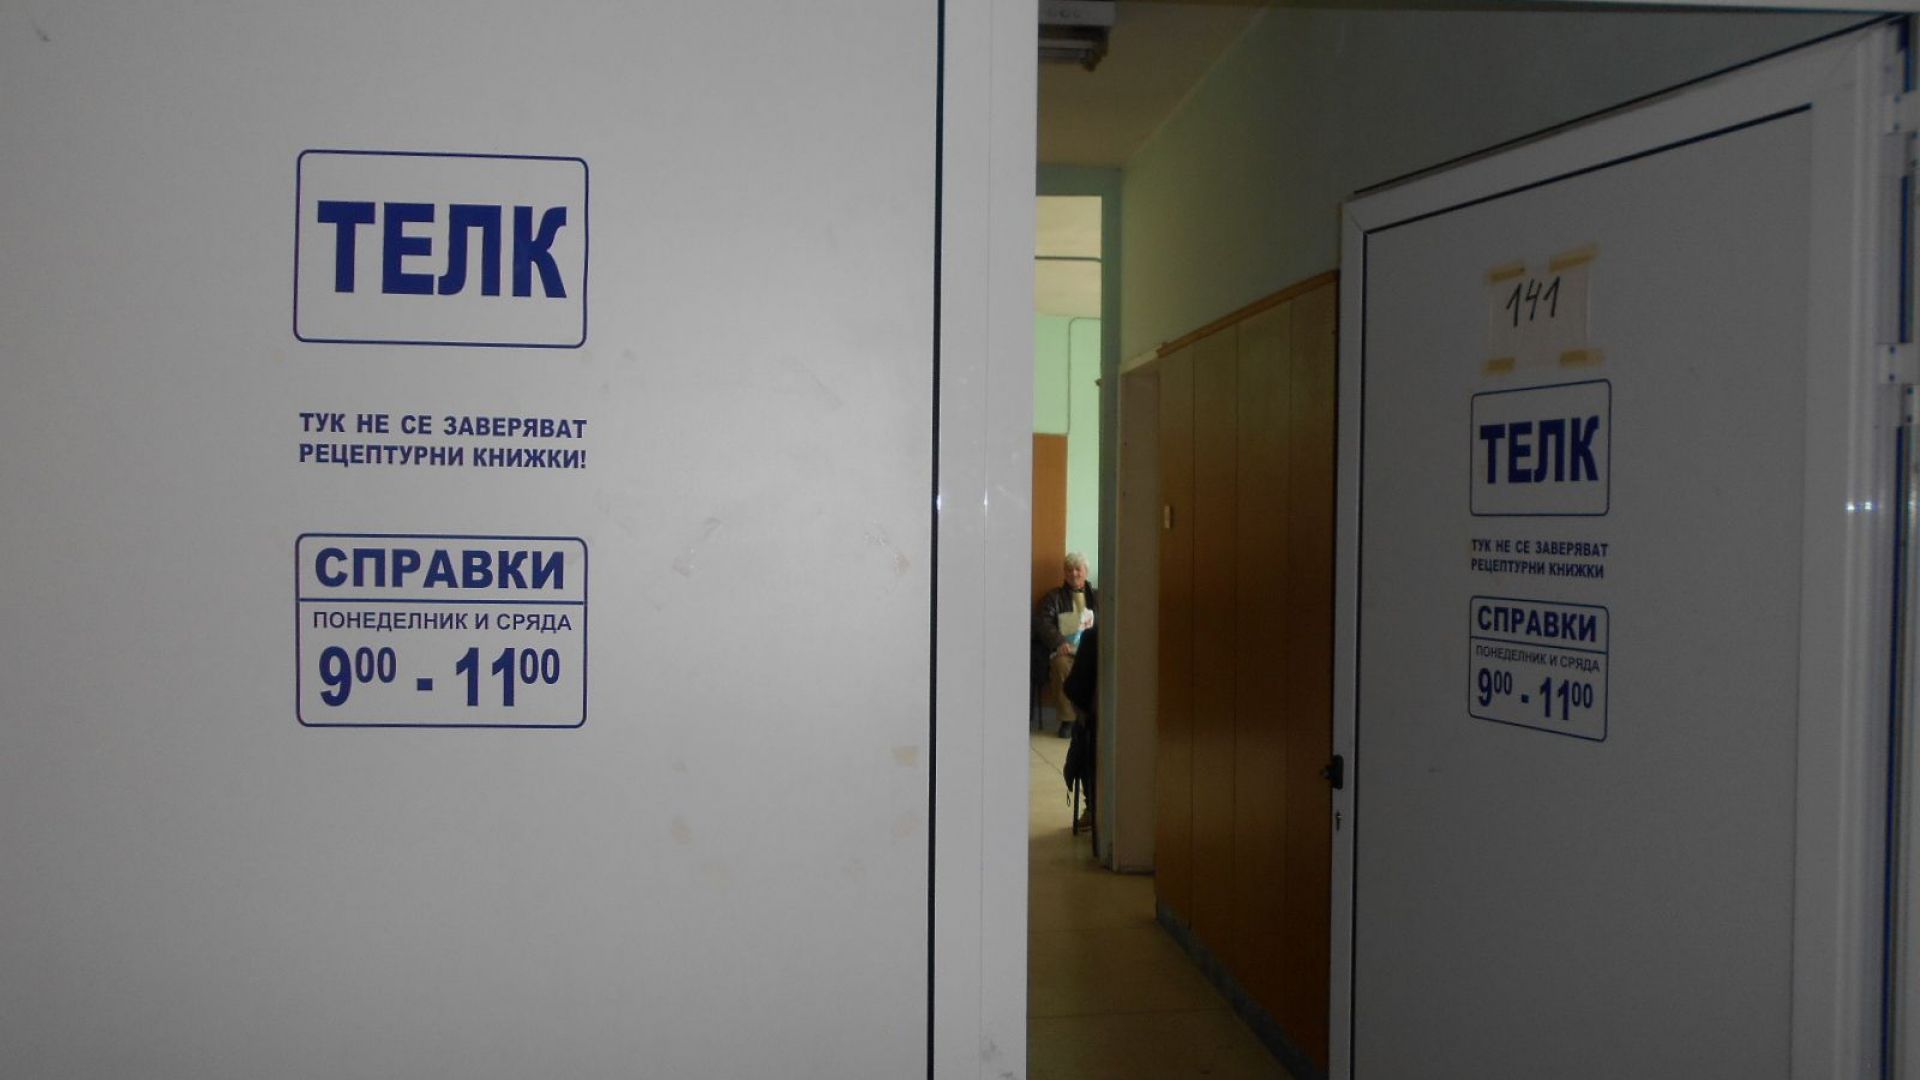 Ръководството на областната болница в Ловеч започва процедура по закриване